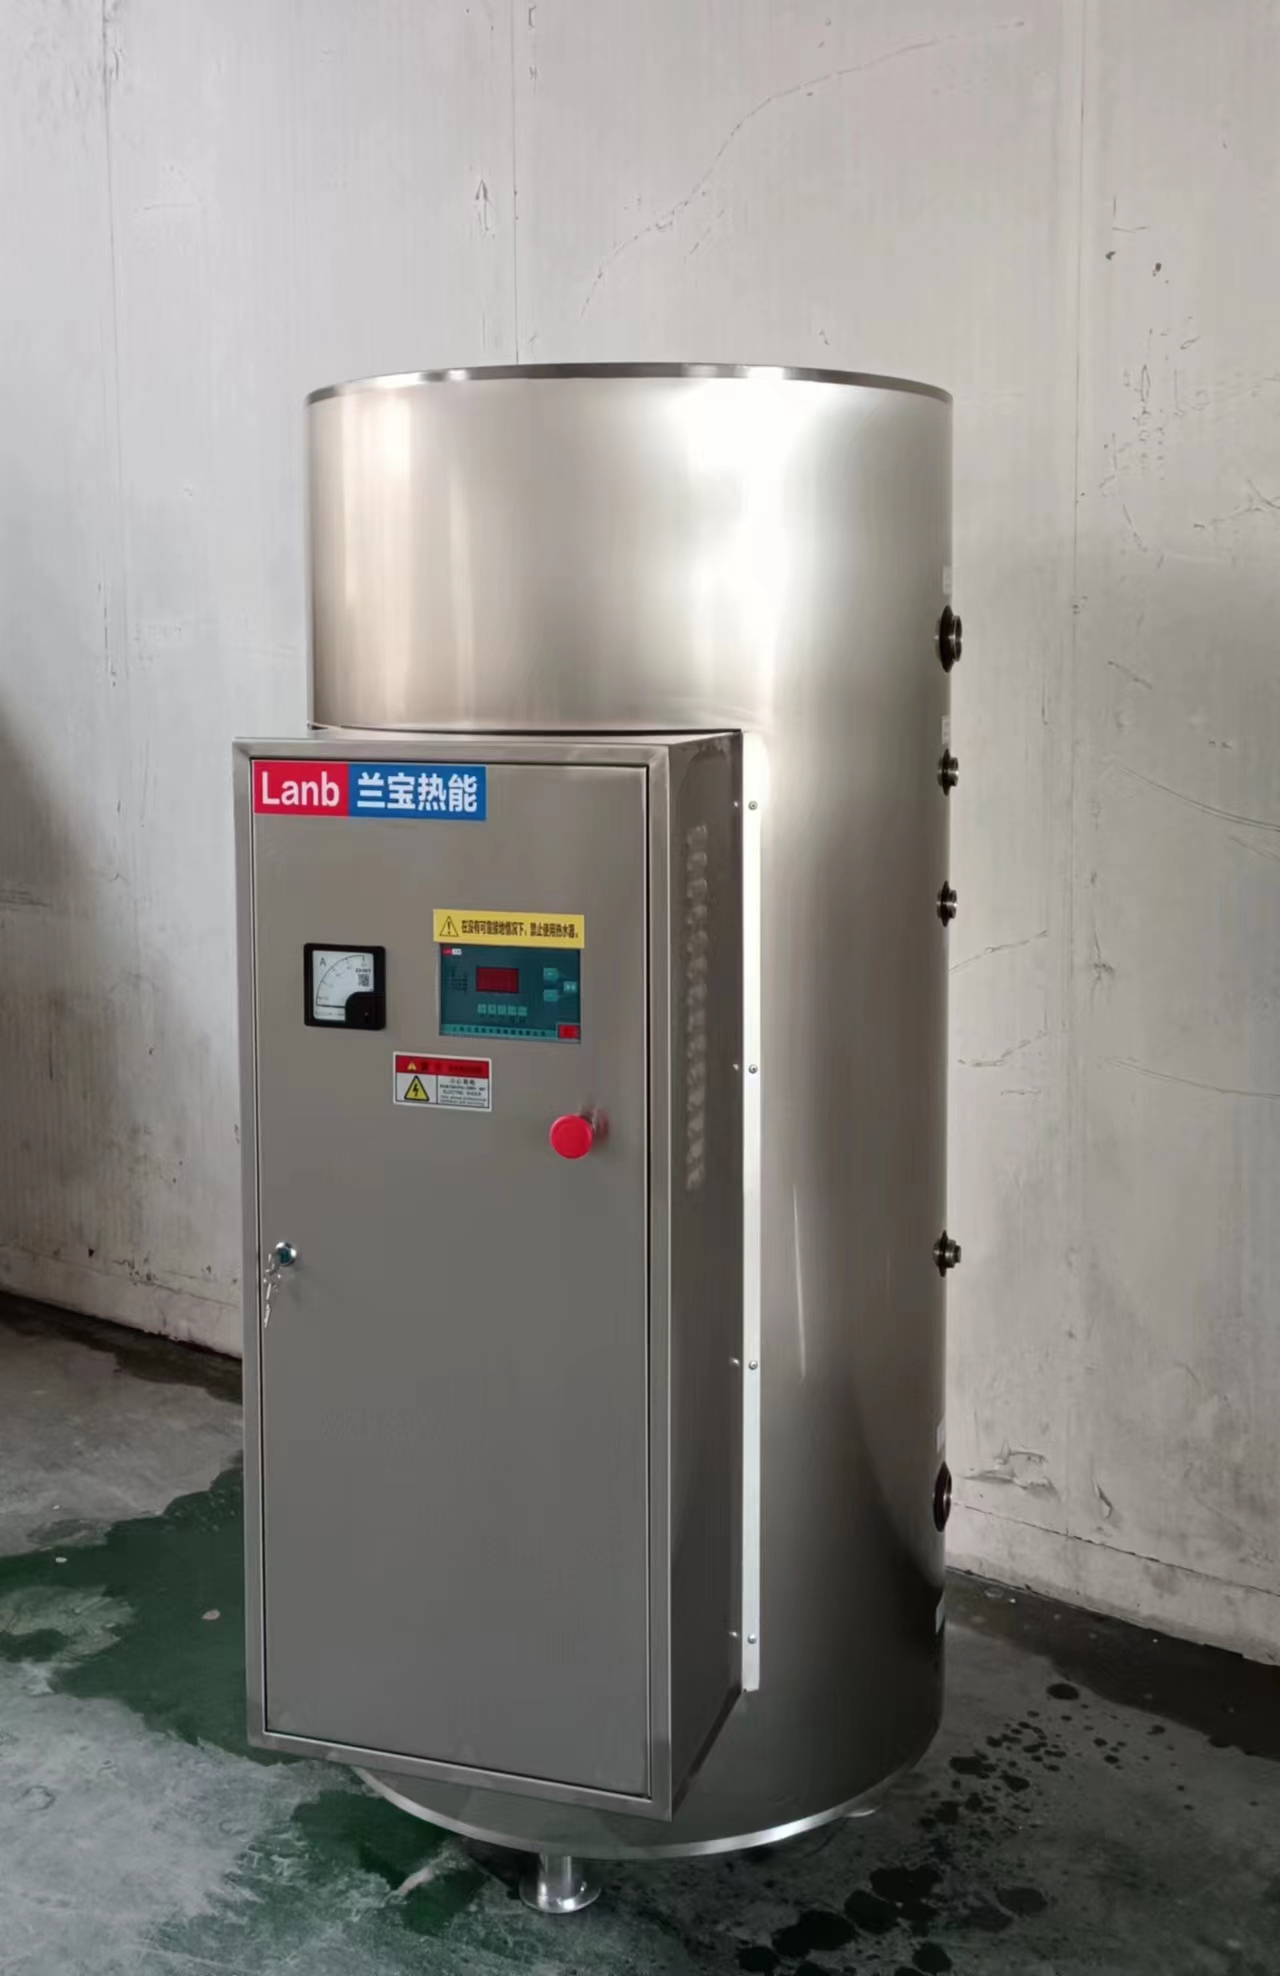 供应上海兰宝JLB-45-30热水器 上海兰宝JLB-455-30热水器